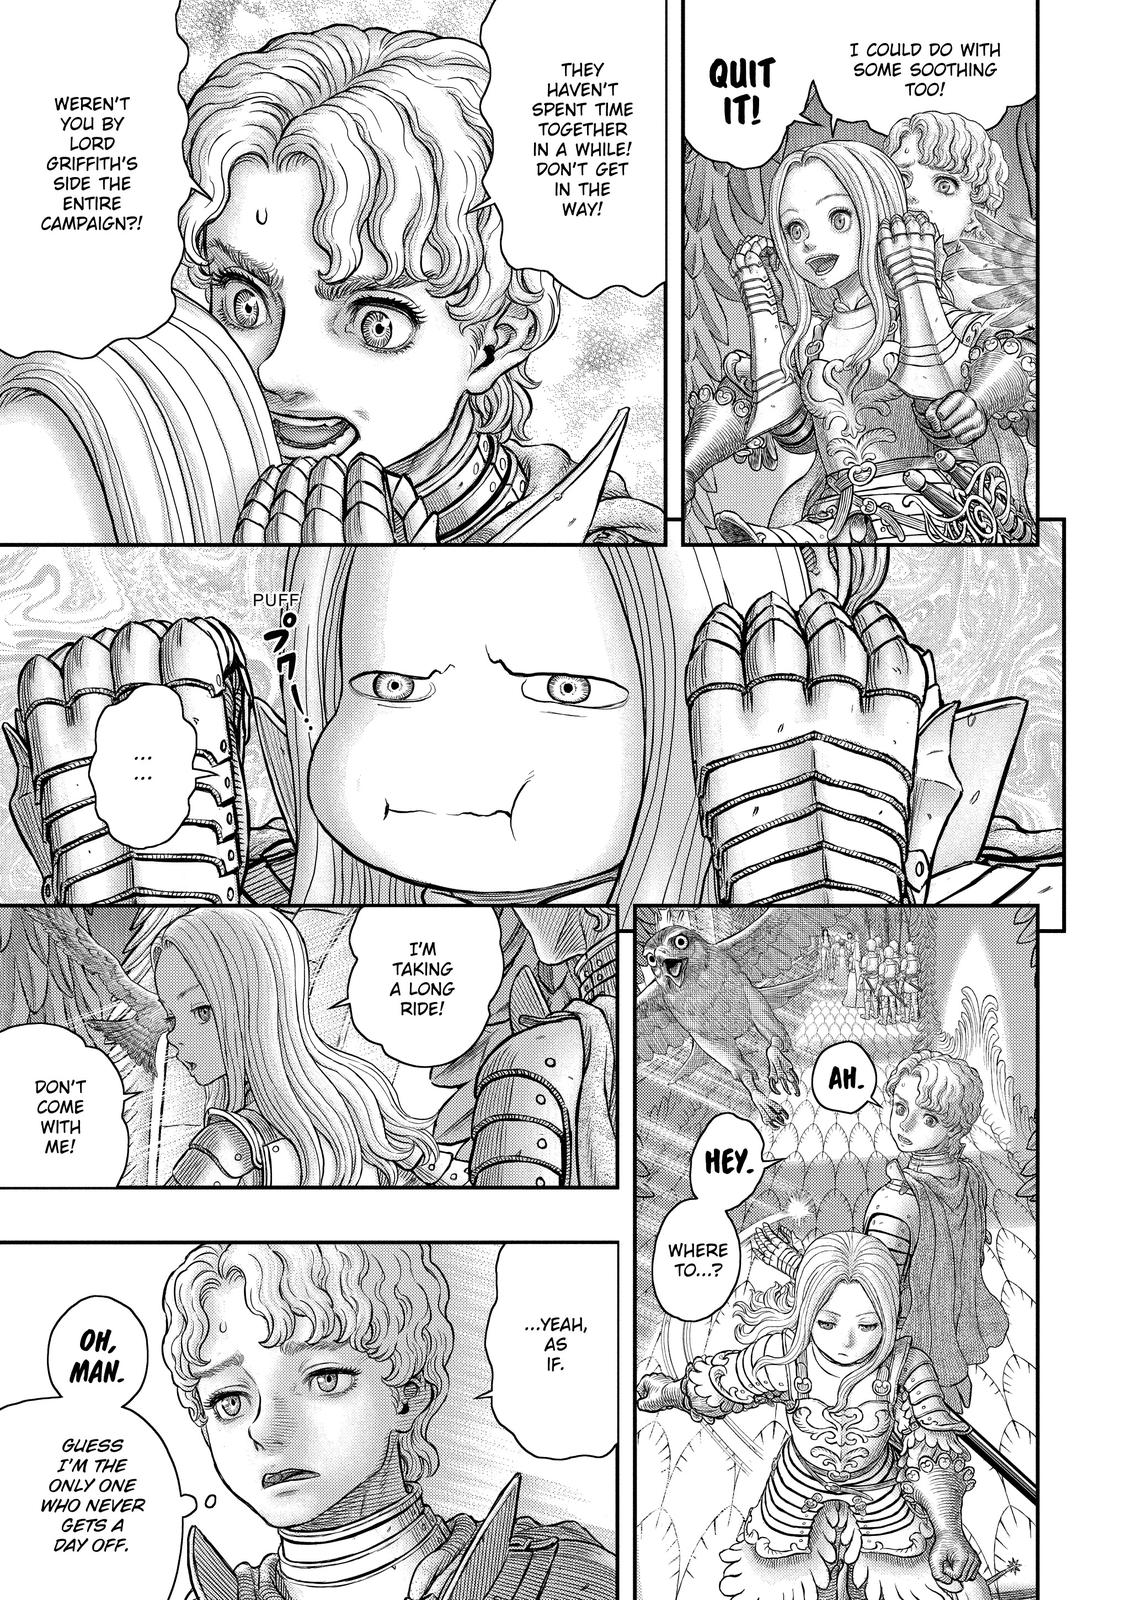 Berserk Manga Chapter 358 image 28